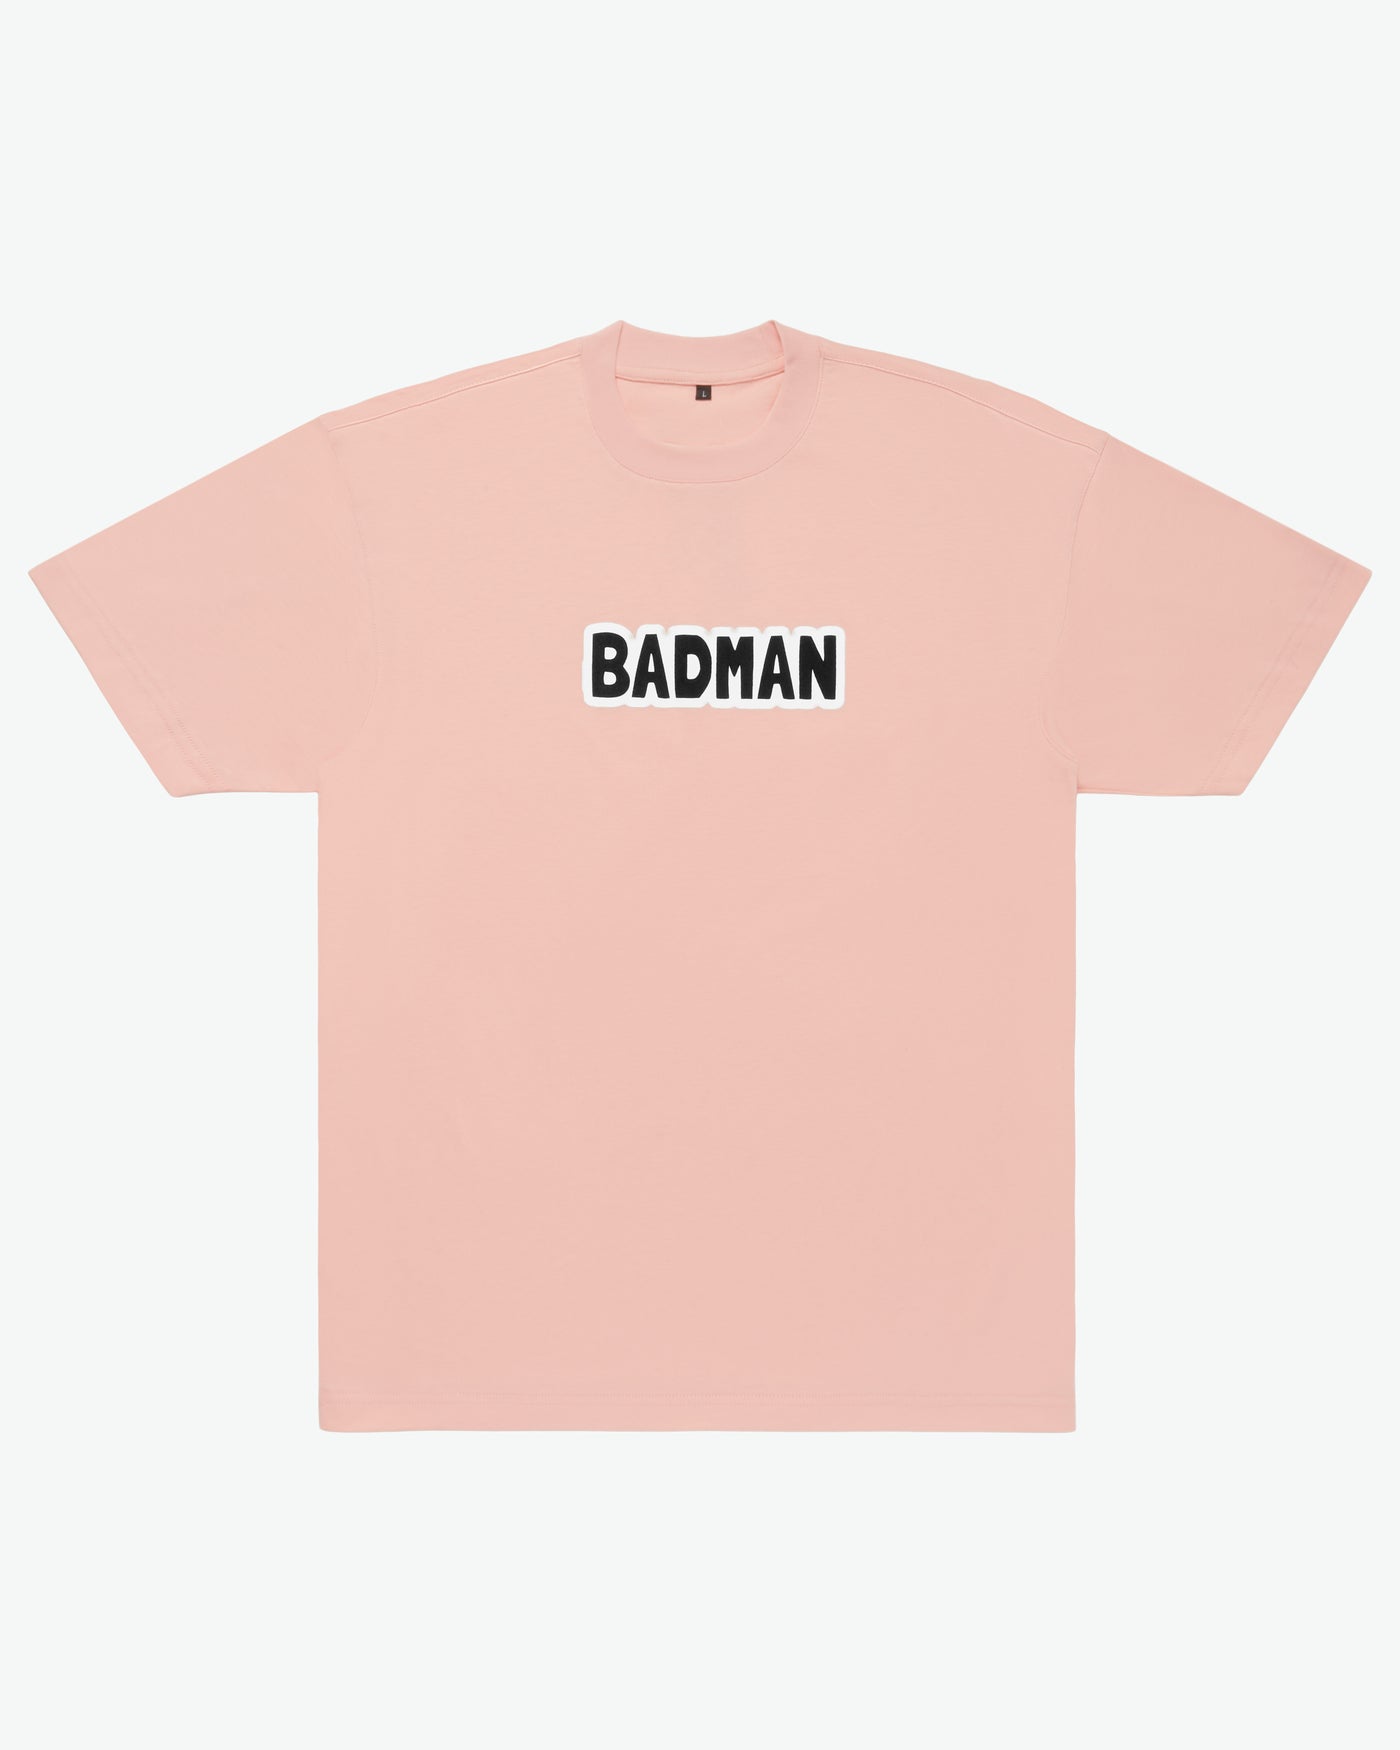 BADMAN Heavyweight Tee / Vacation Pink